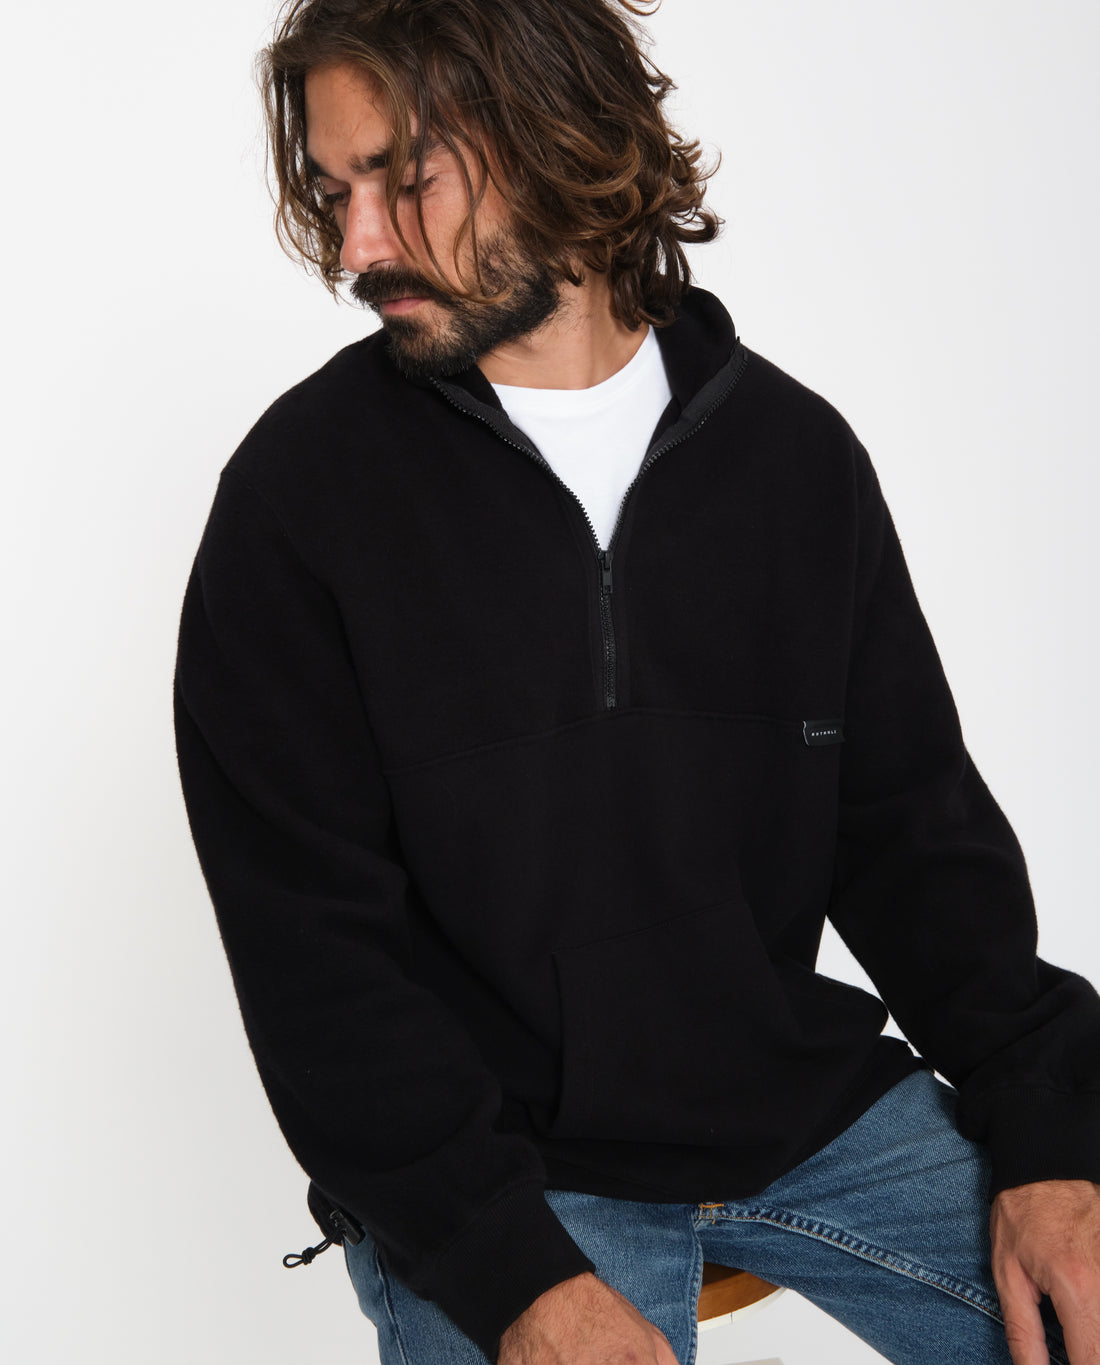 marché commun rotholz sweatshirt col zippé polaire coton biologique homme noir éco-responsable éthique